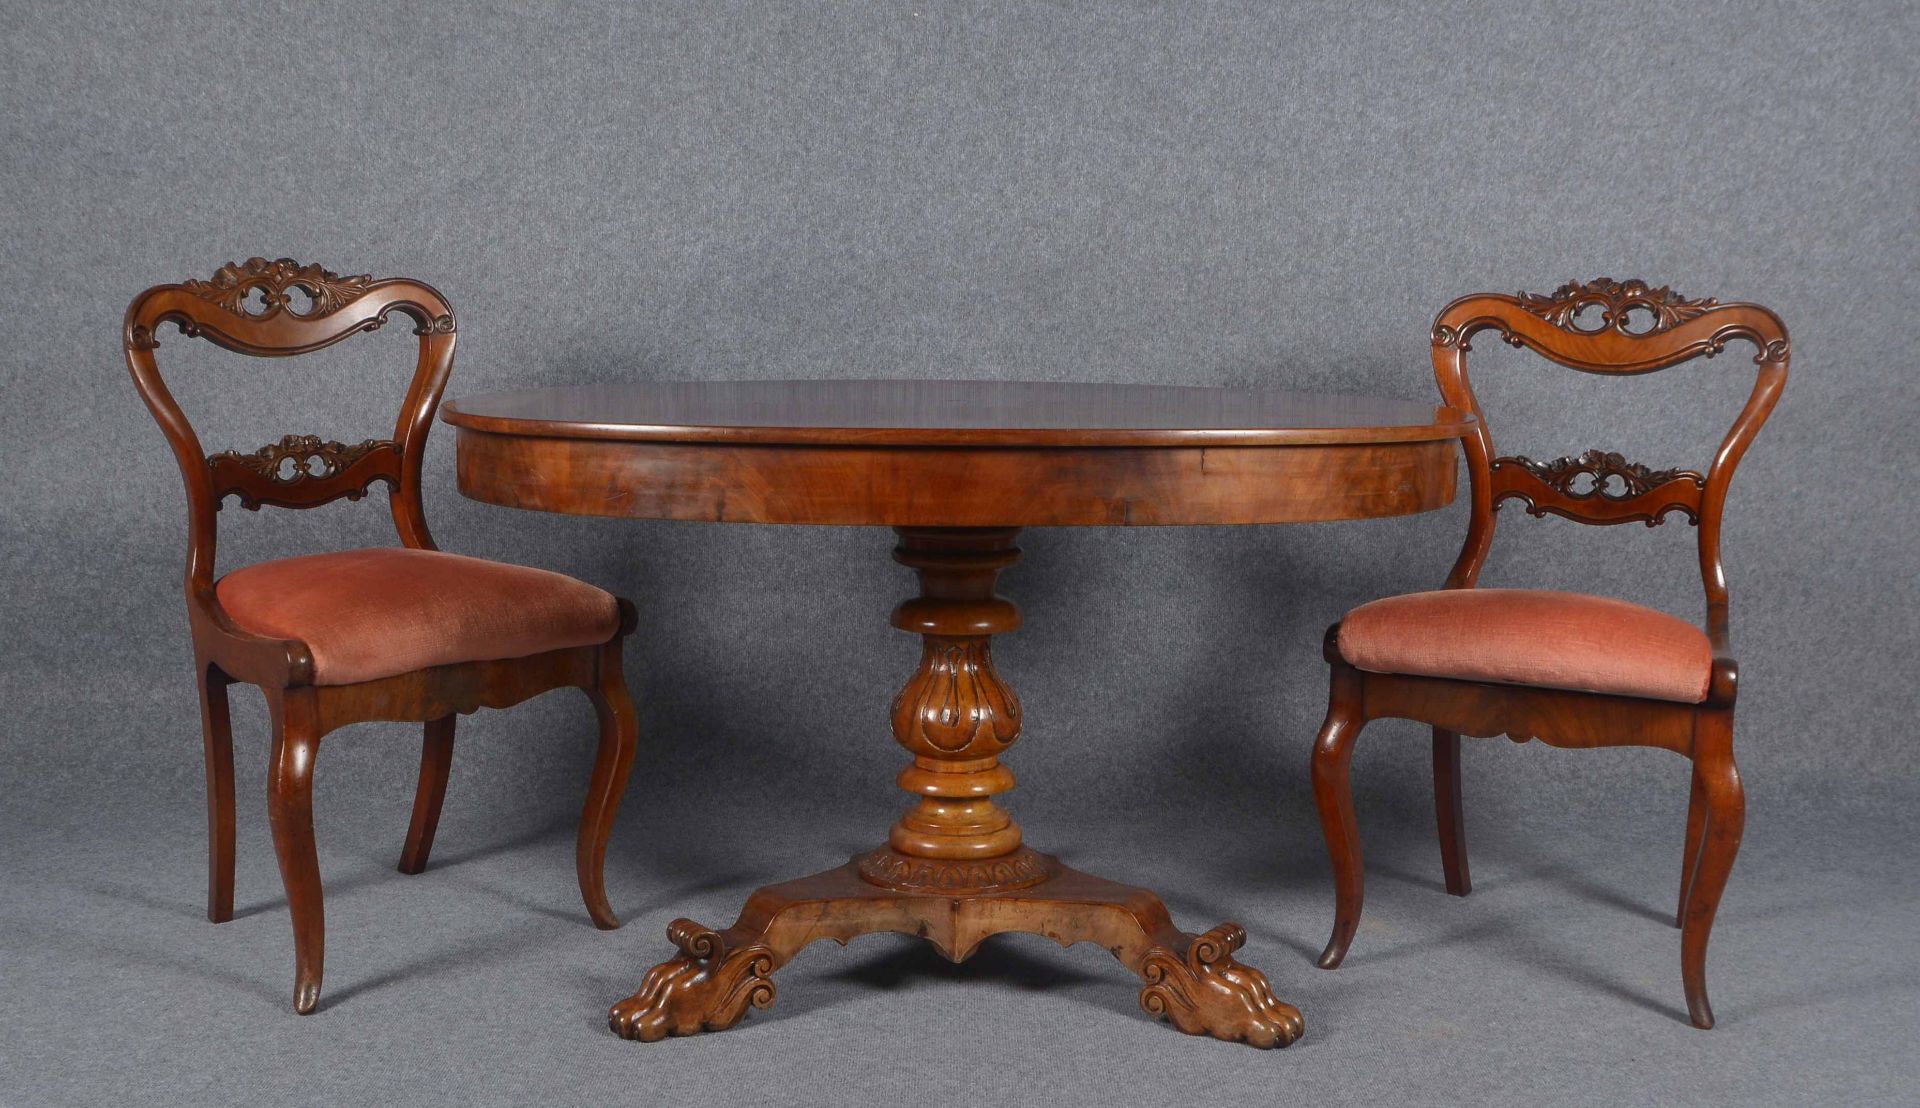 Sitzgruppe, 3-teilig, Tisch mit Paar Stühlen: Tisch mit ovaler Mahagoniplatte auf schwerem Balusters